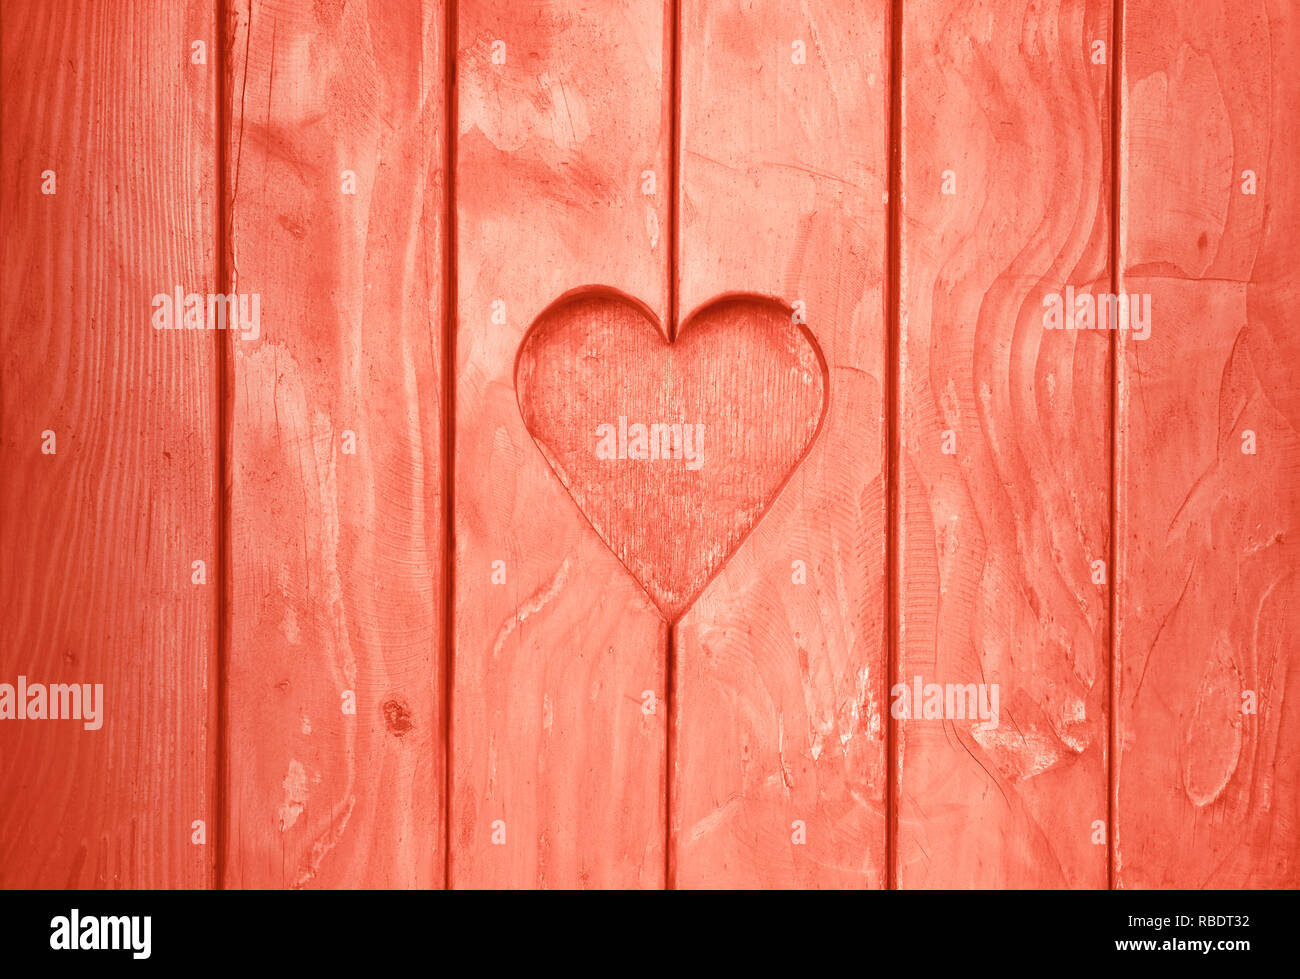 Nahaufnahme eines Herzens, Form, Symbol der Liebe und der Romantik, Holz geschnitzt Schnitt in hölzernen Planken Textur Hintergrund, Coral Pink gestrichenen Fensterläden Stockfoto